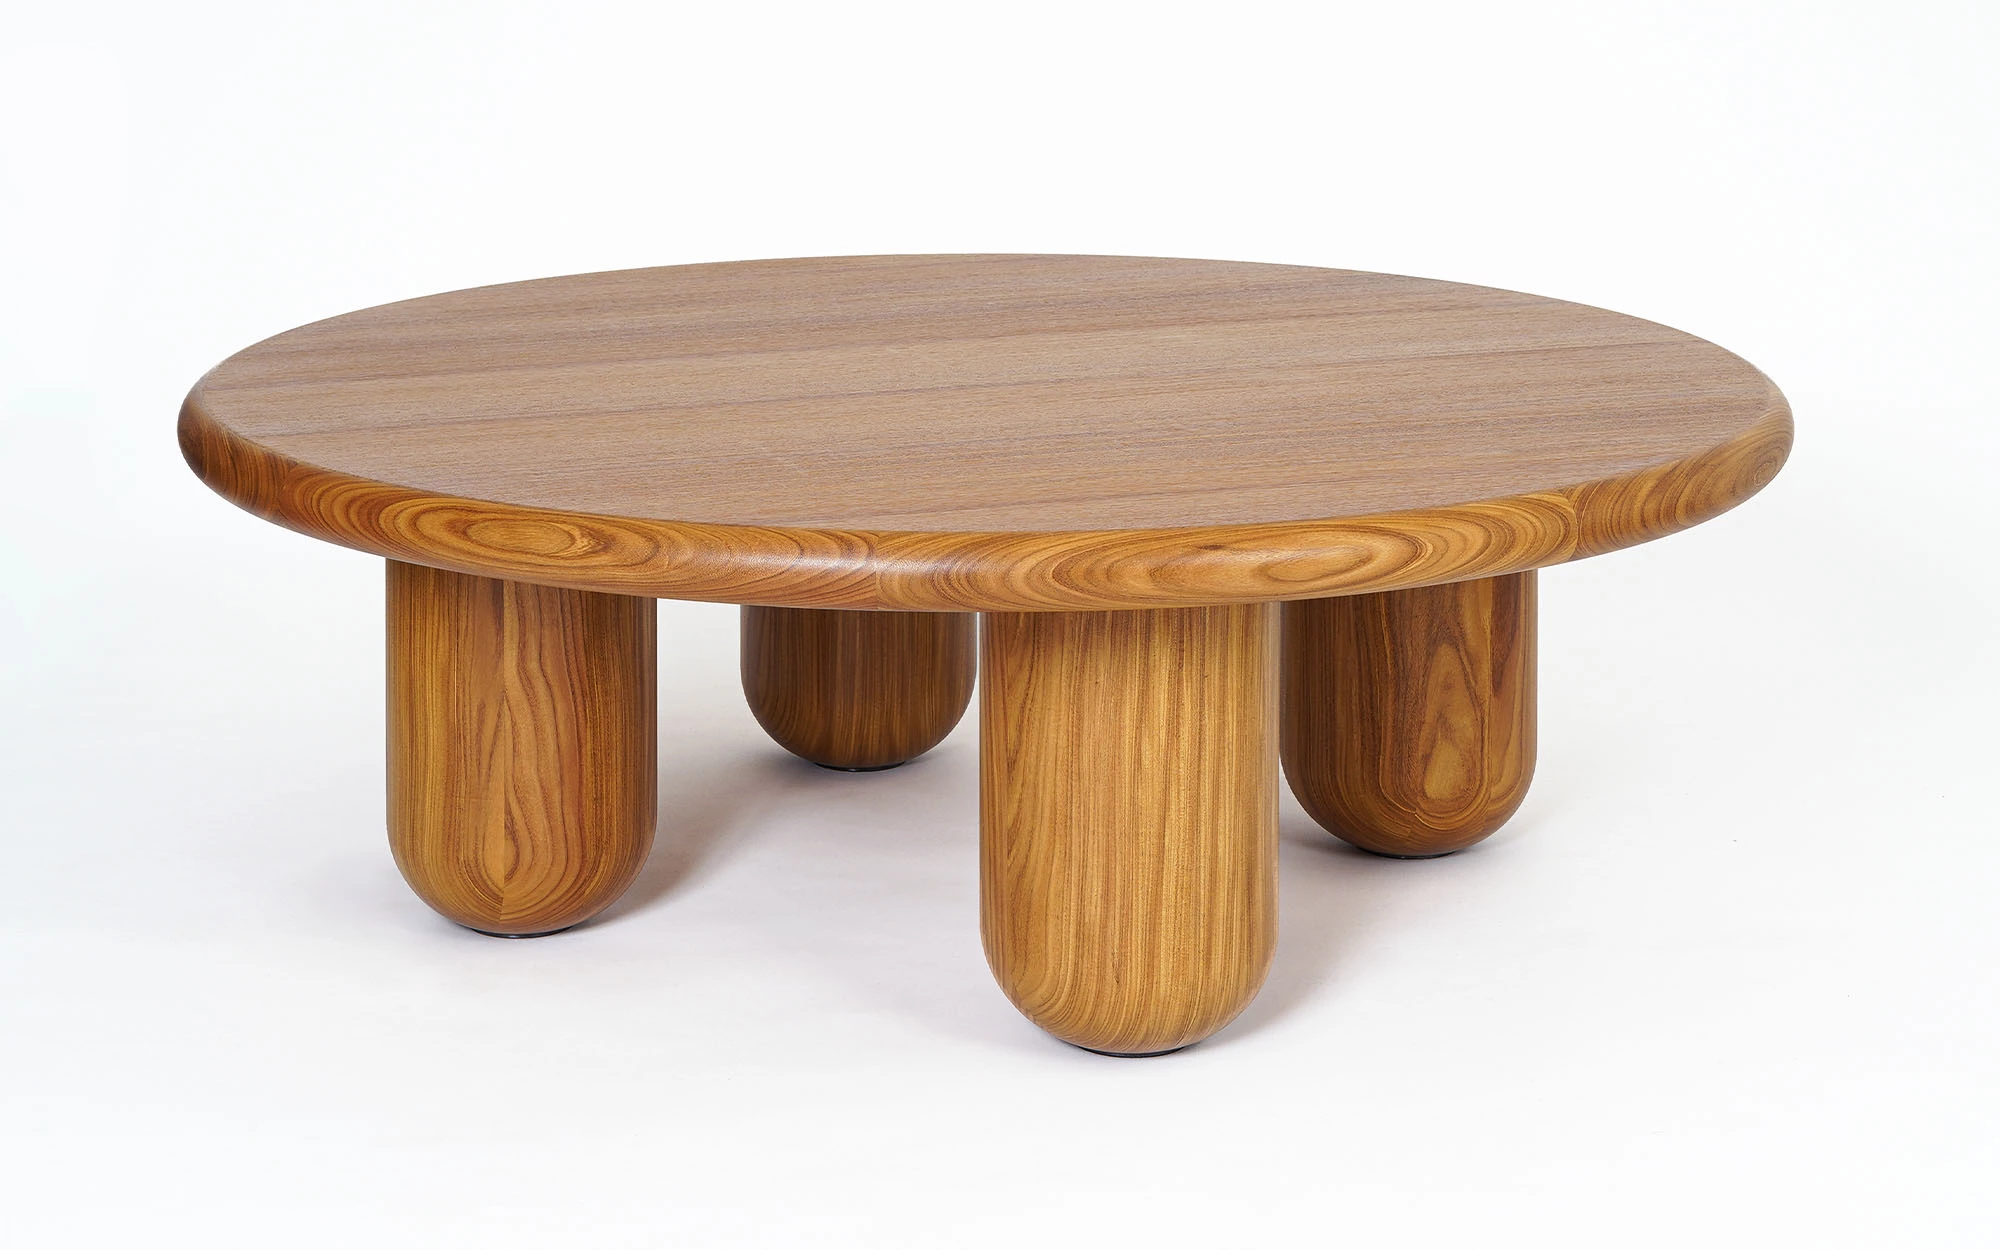 Organism coffee table - Jaime Hayon - Floor light - Galerie kreo